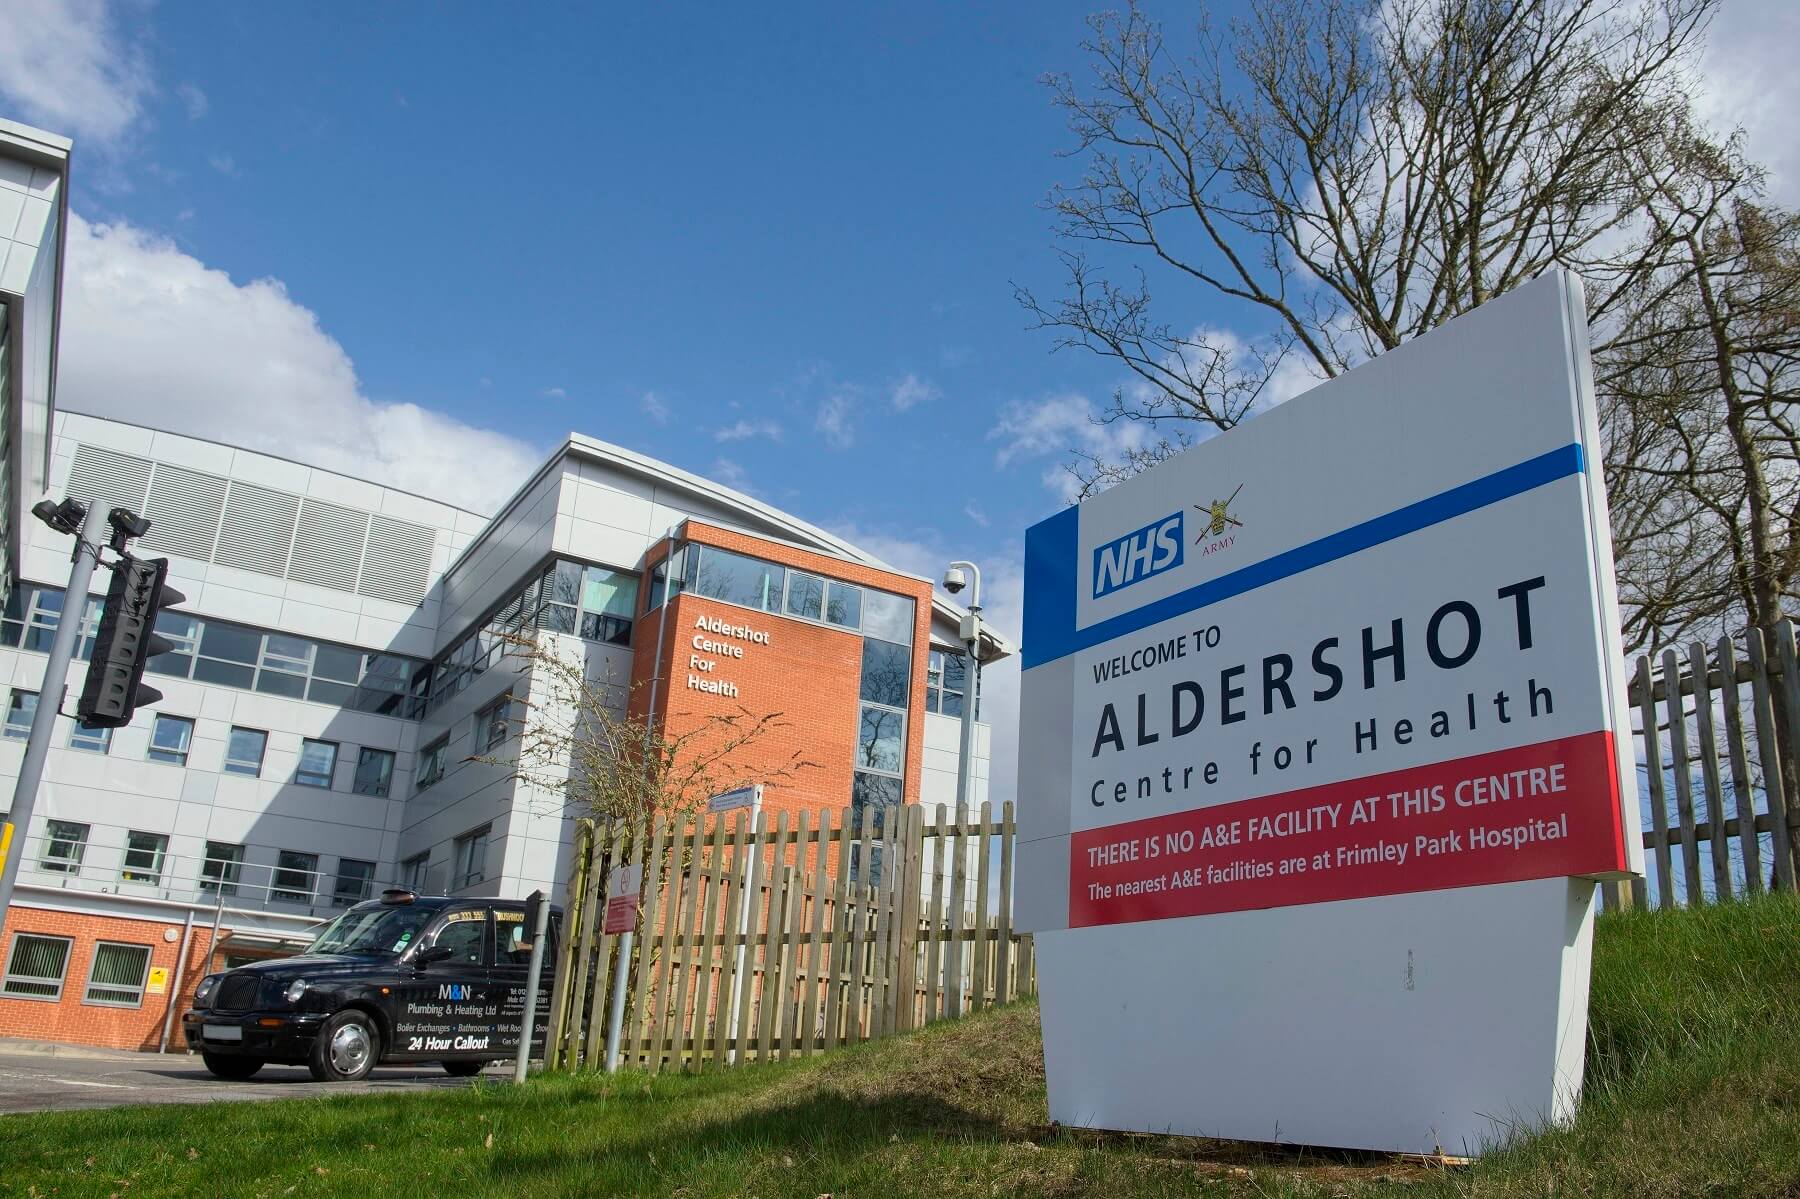 Exterior of Aldershot Centre for Health